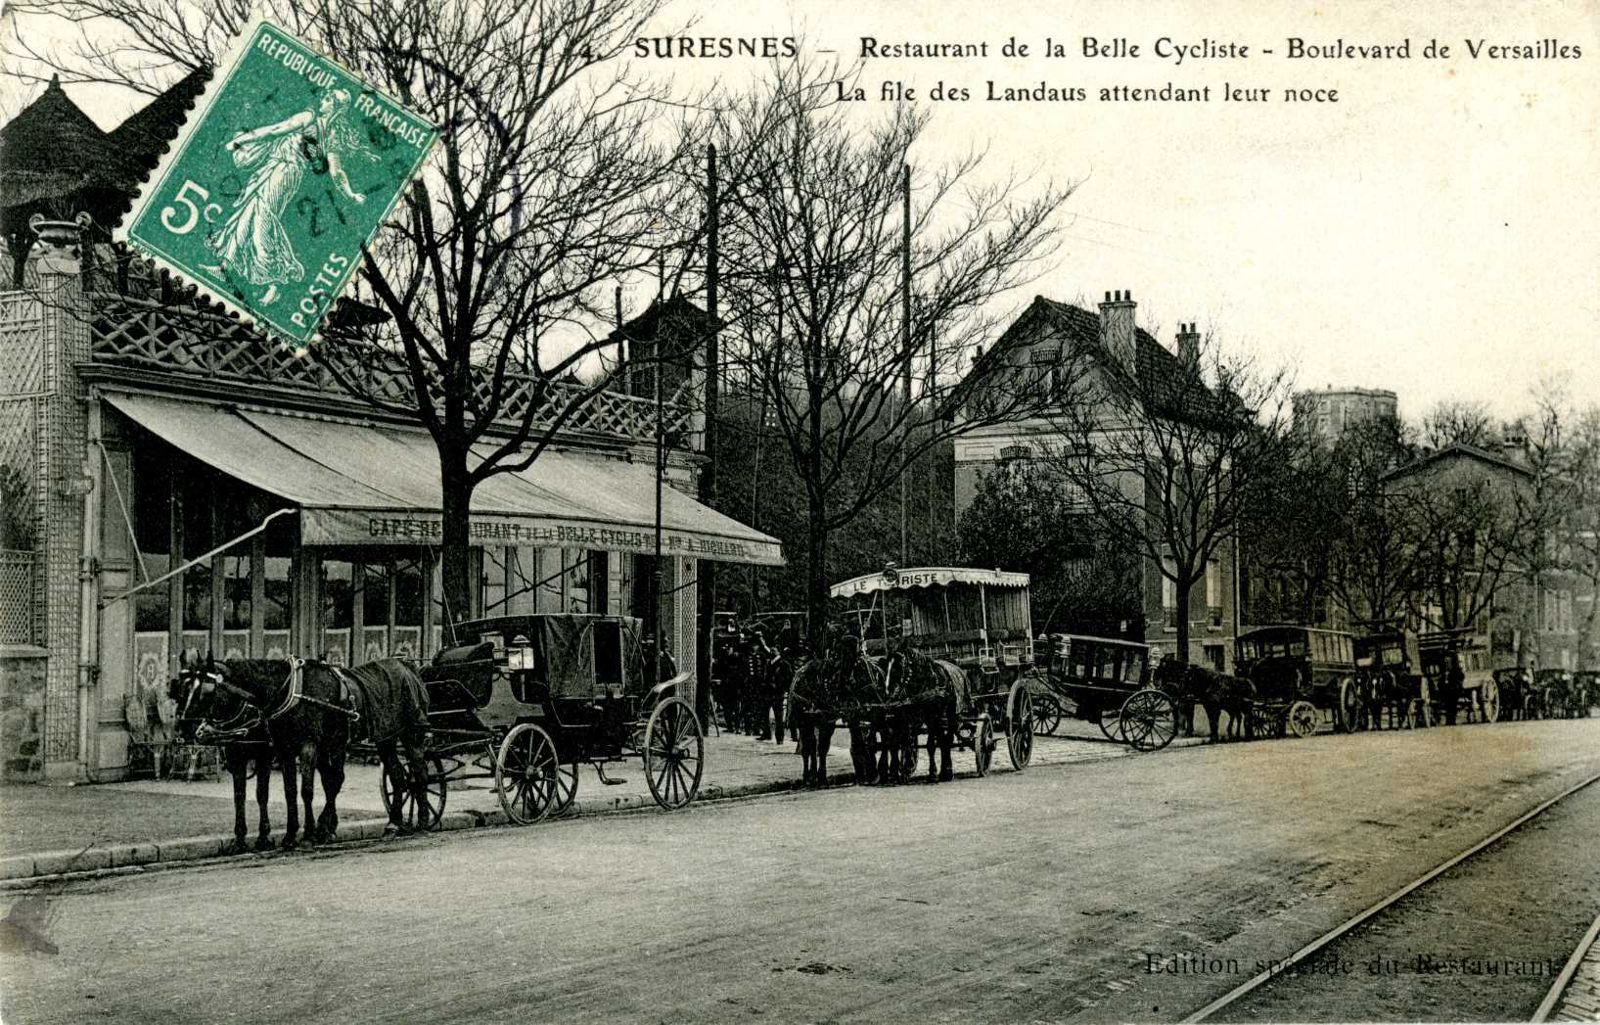 Suresnes - Restaurant de la Belle Cycliste - Boulevard de Versailles - La file des Landaus attendant leur noce